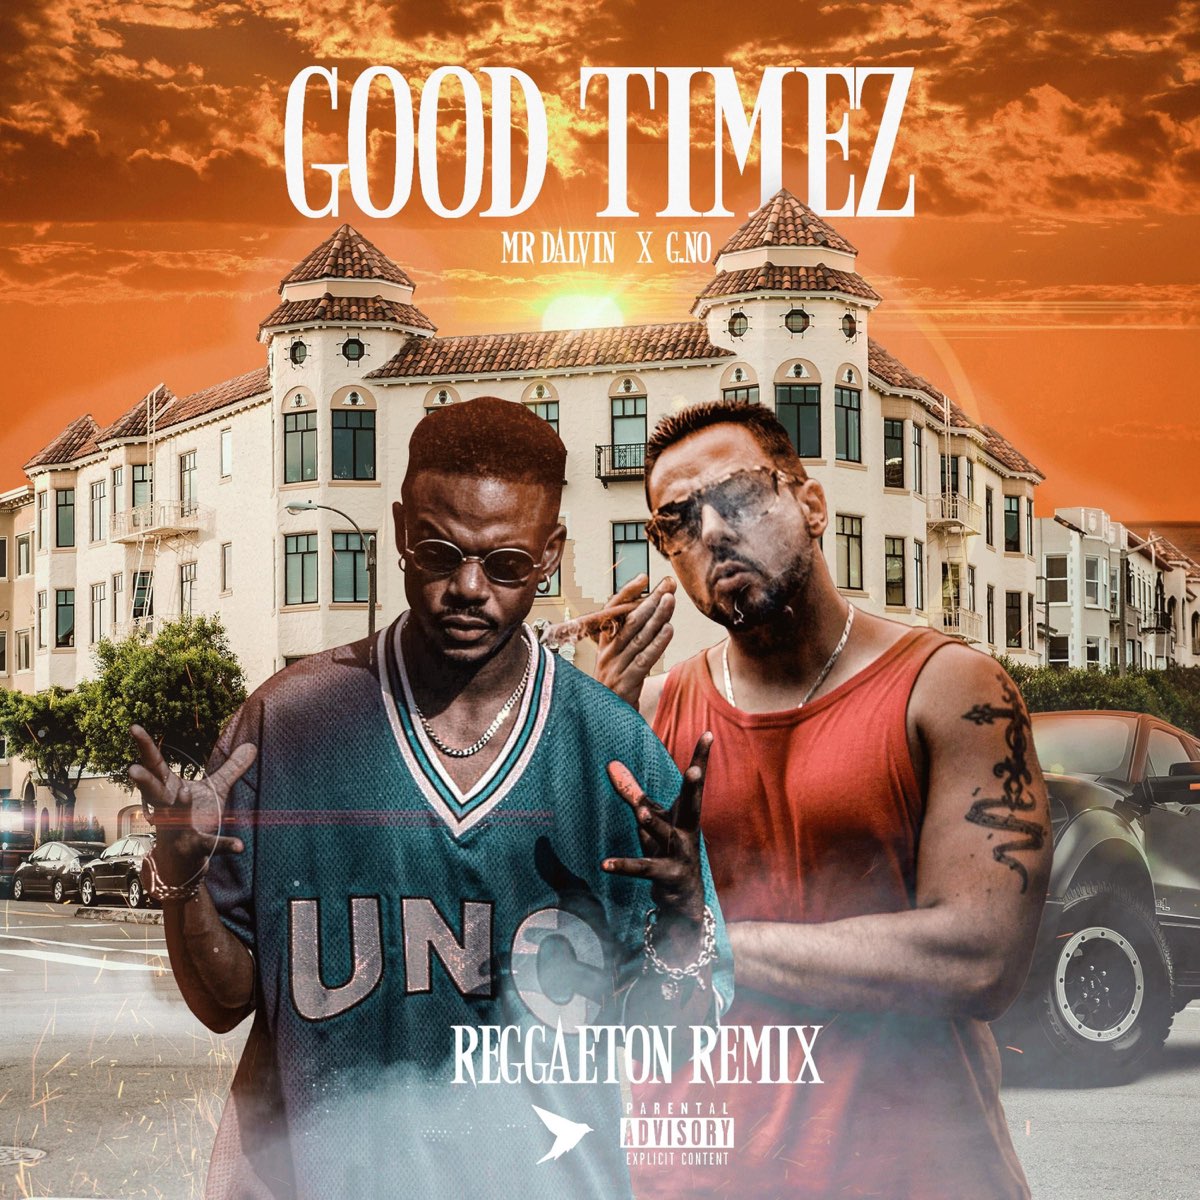 Good Timez (Reggaeton Remix) - Single by Mr. Dalvin & G.No.